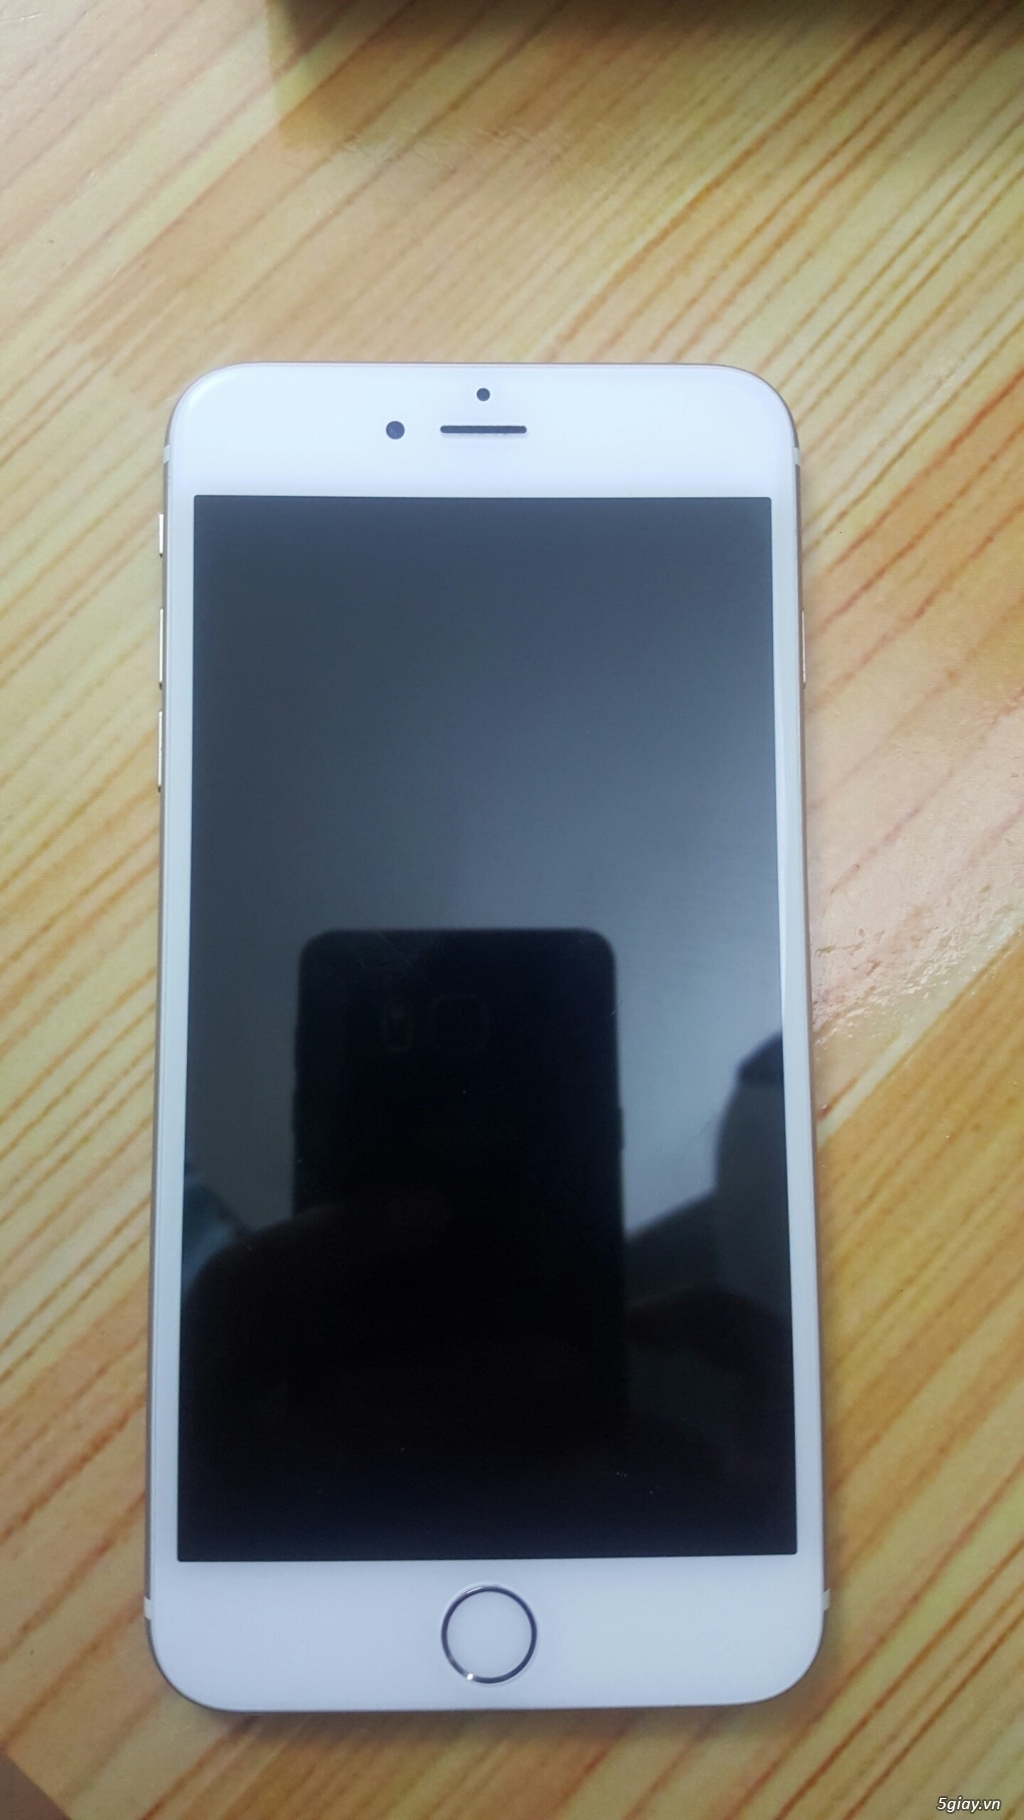 iPhone 6plus 16gb, qte, màu gold - 1